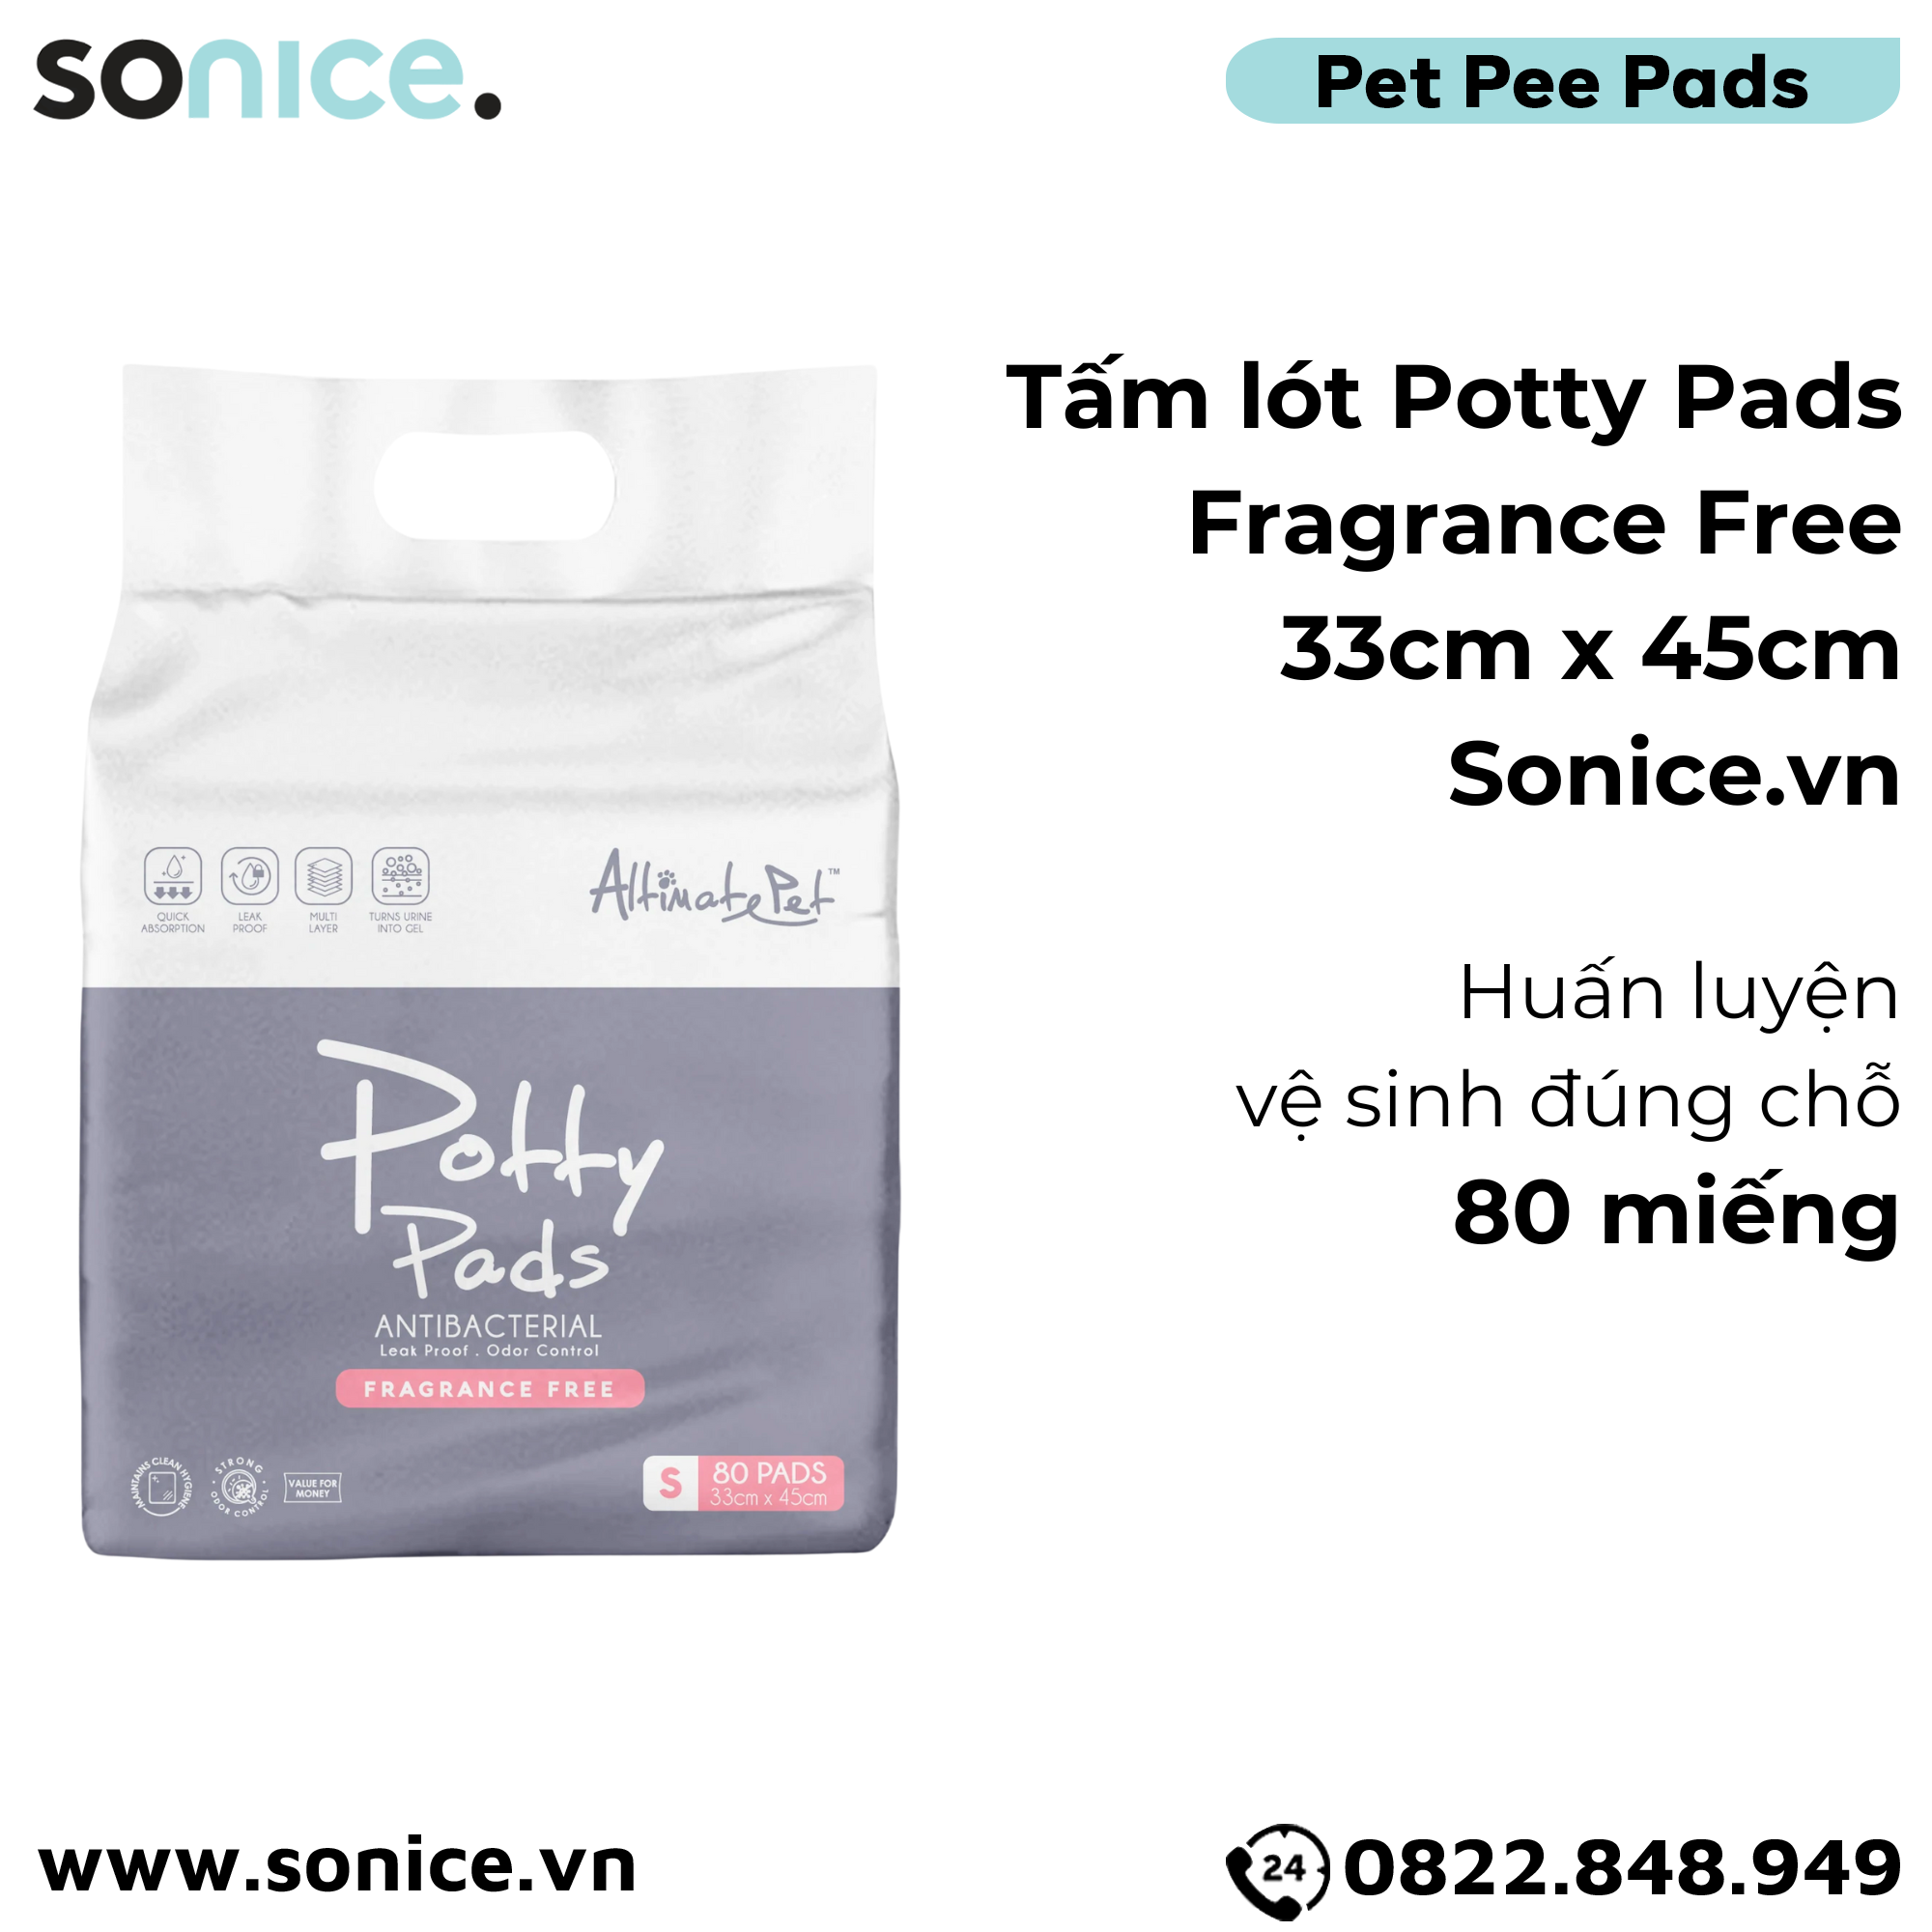  Tấm lót Potty Pads Fragrance Free 33cm x 45cm - huấn luyện vệ sinh đúng chỗ SONICE. 